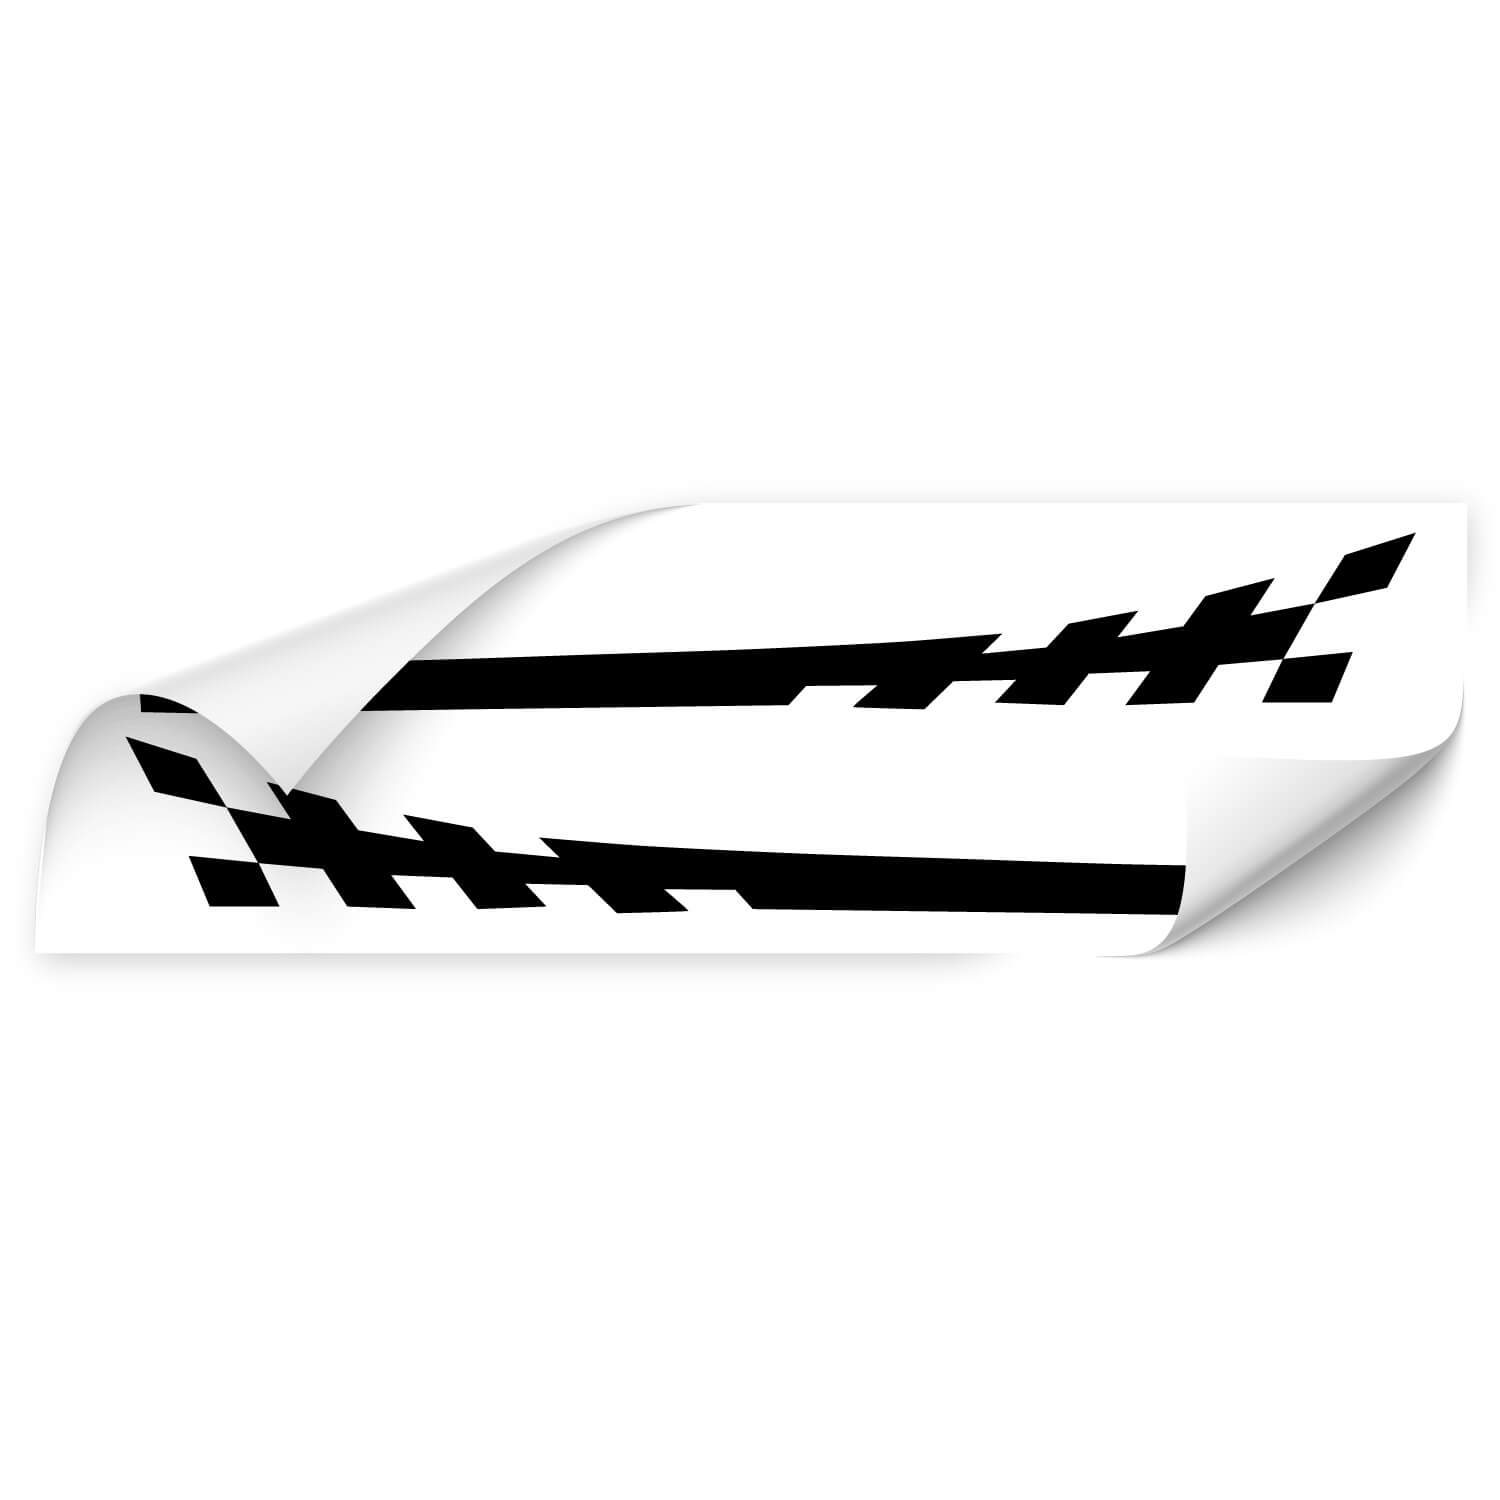 Autoaufkleber mit Racing Stripes bei Klebe-X kaufen und erleben!